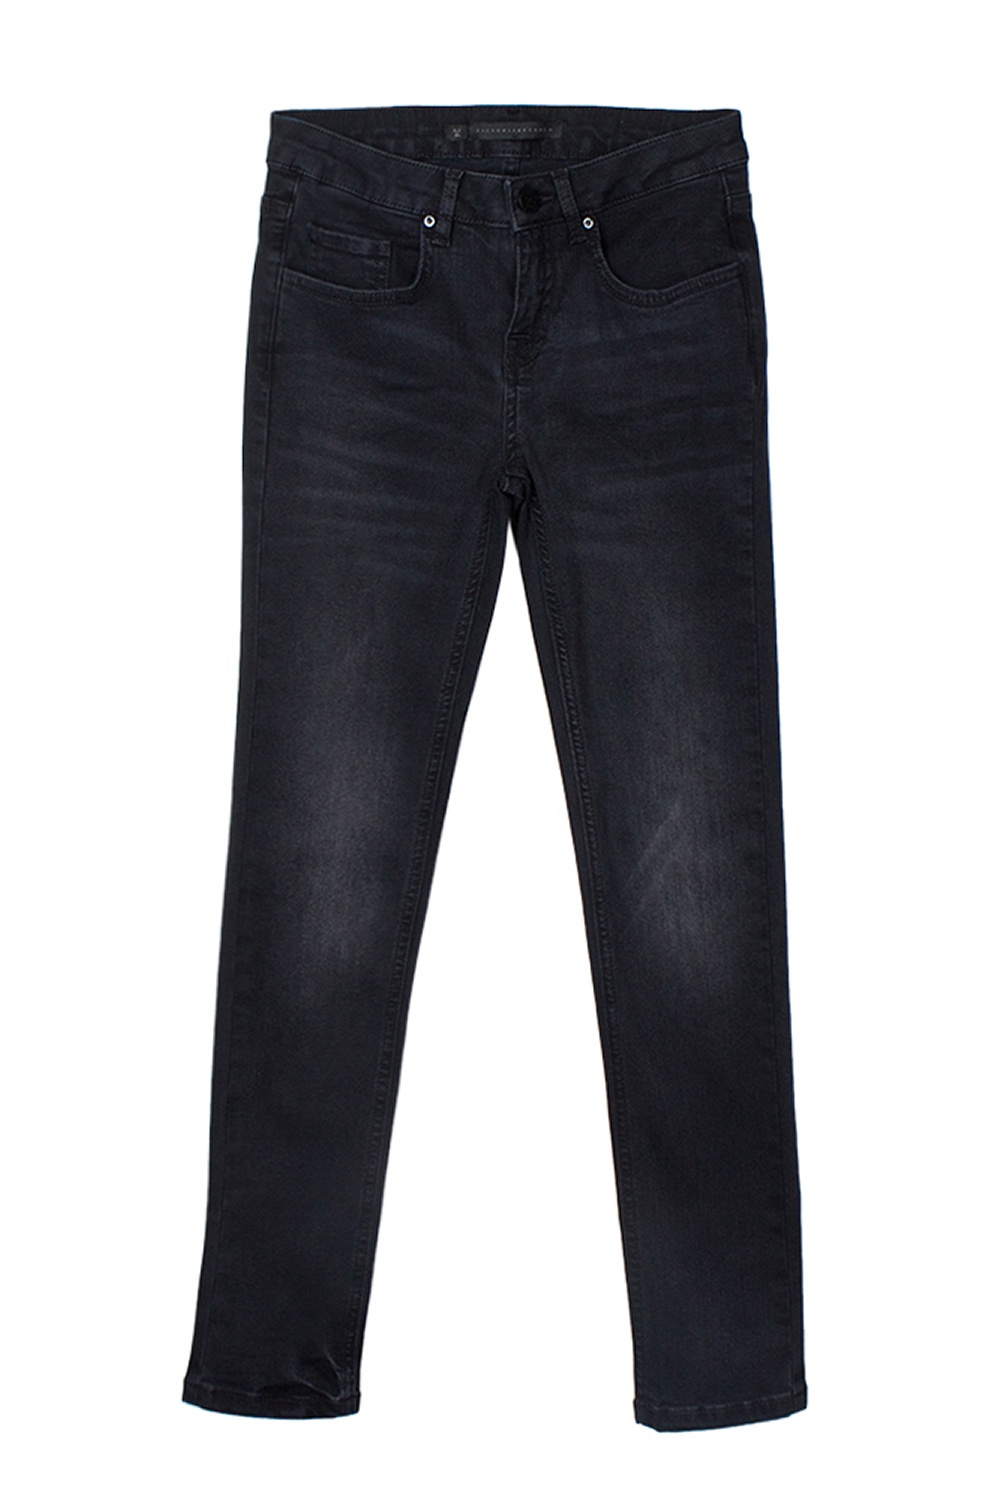 Новые черные джинсы Victoria Beckham, 31 размер